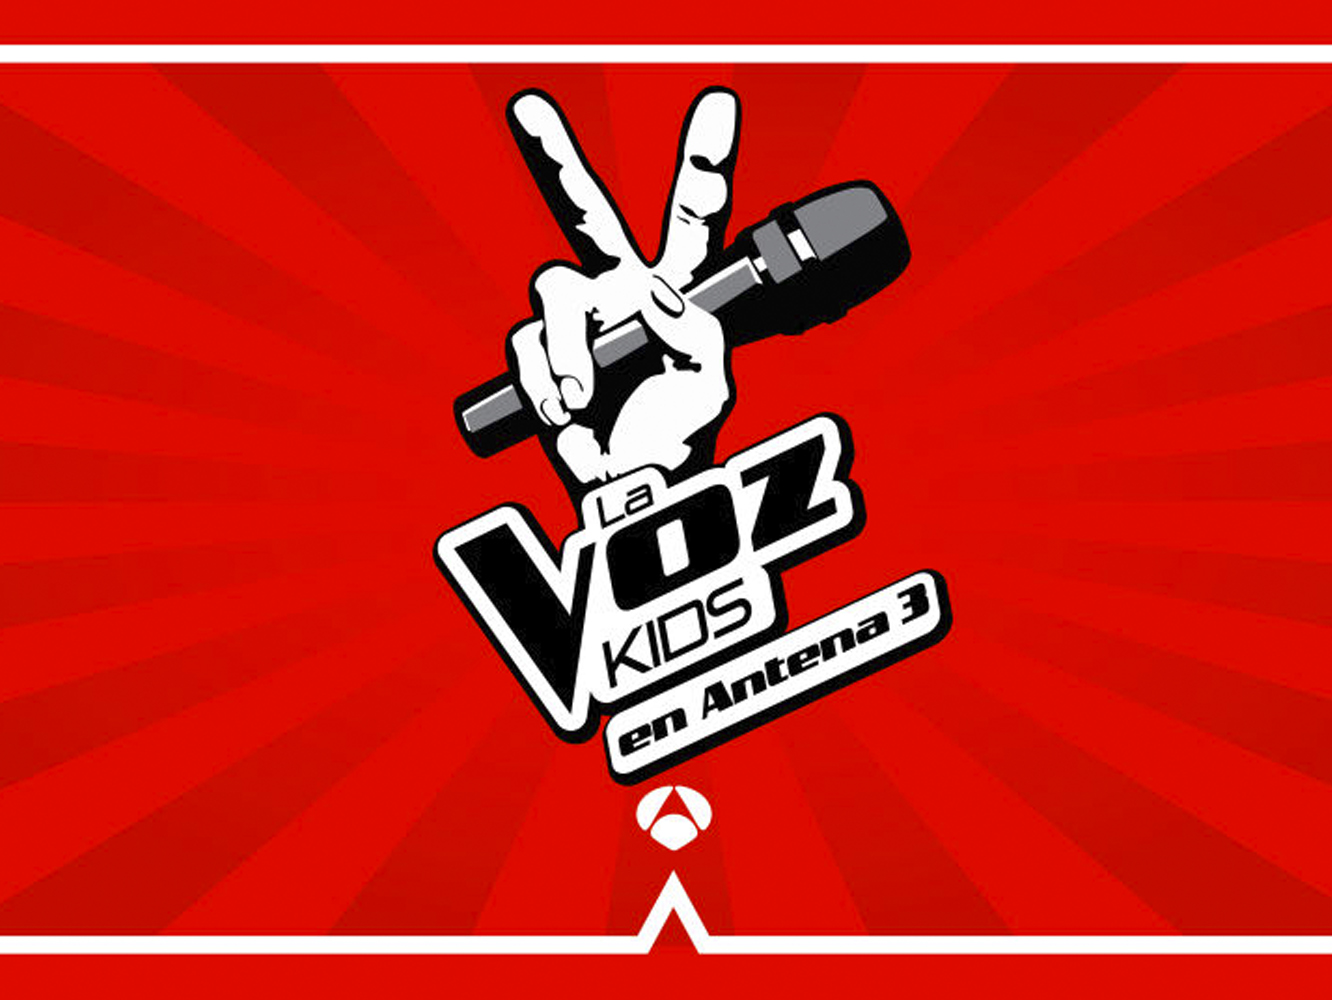  Antena3 arriesga un coño con los jurados de ‘La Voz Kids’, y confirma las caras de siempre